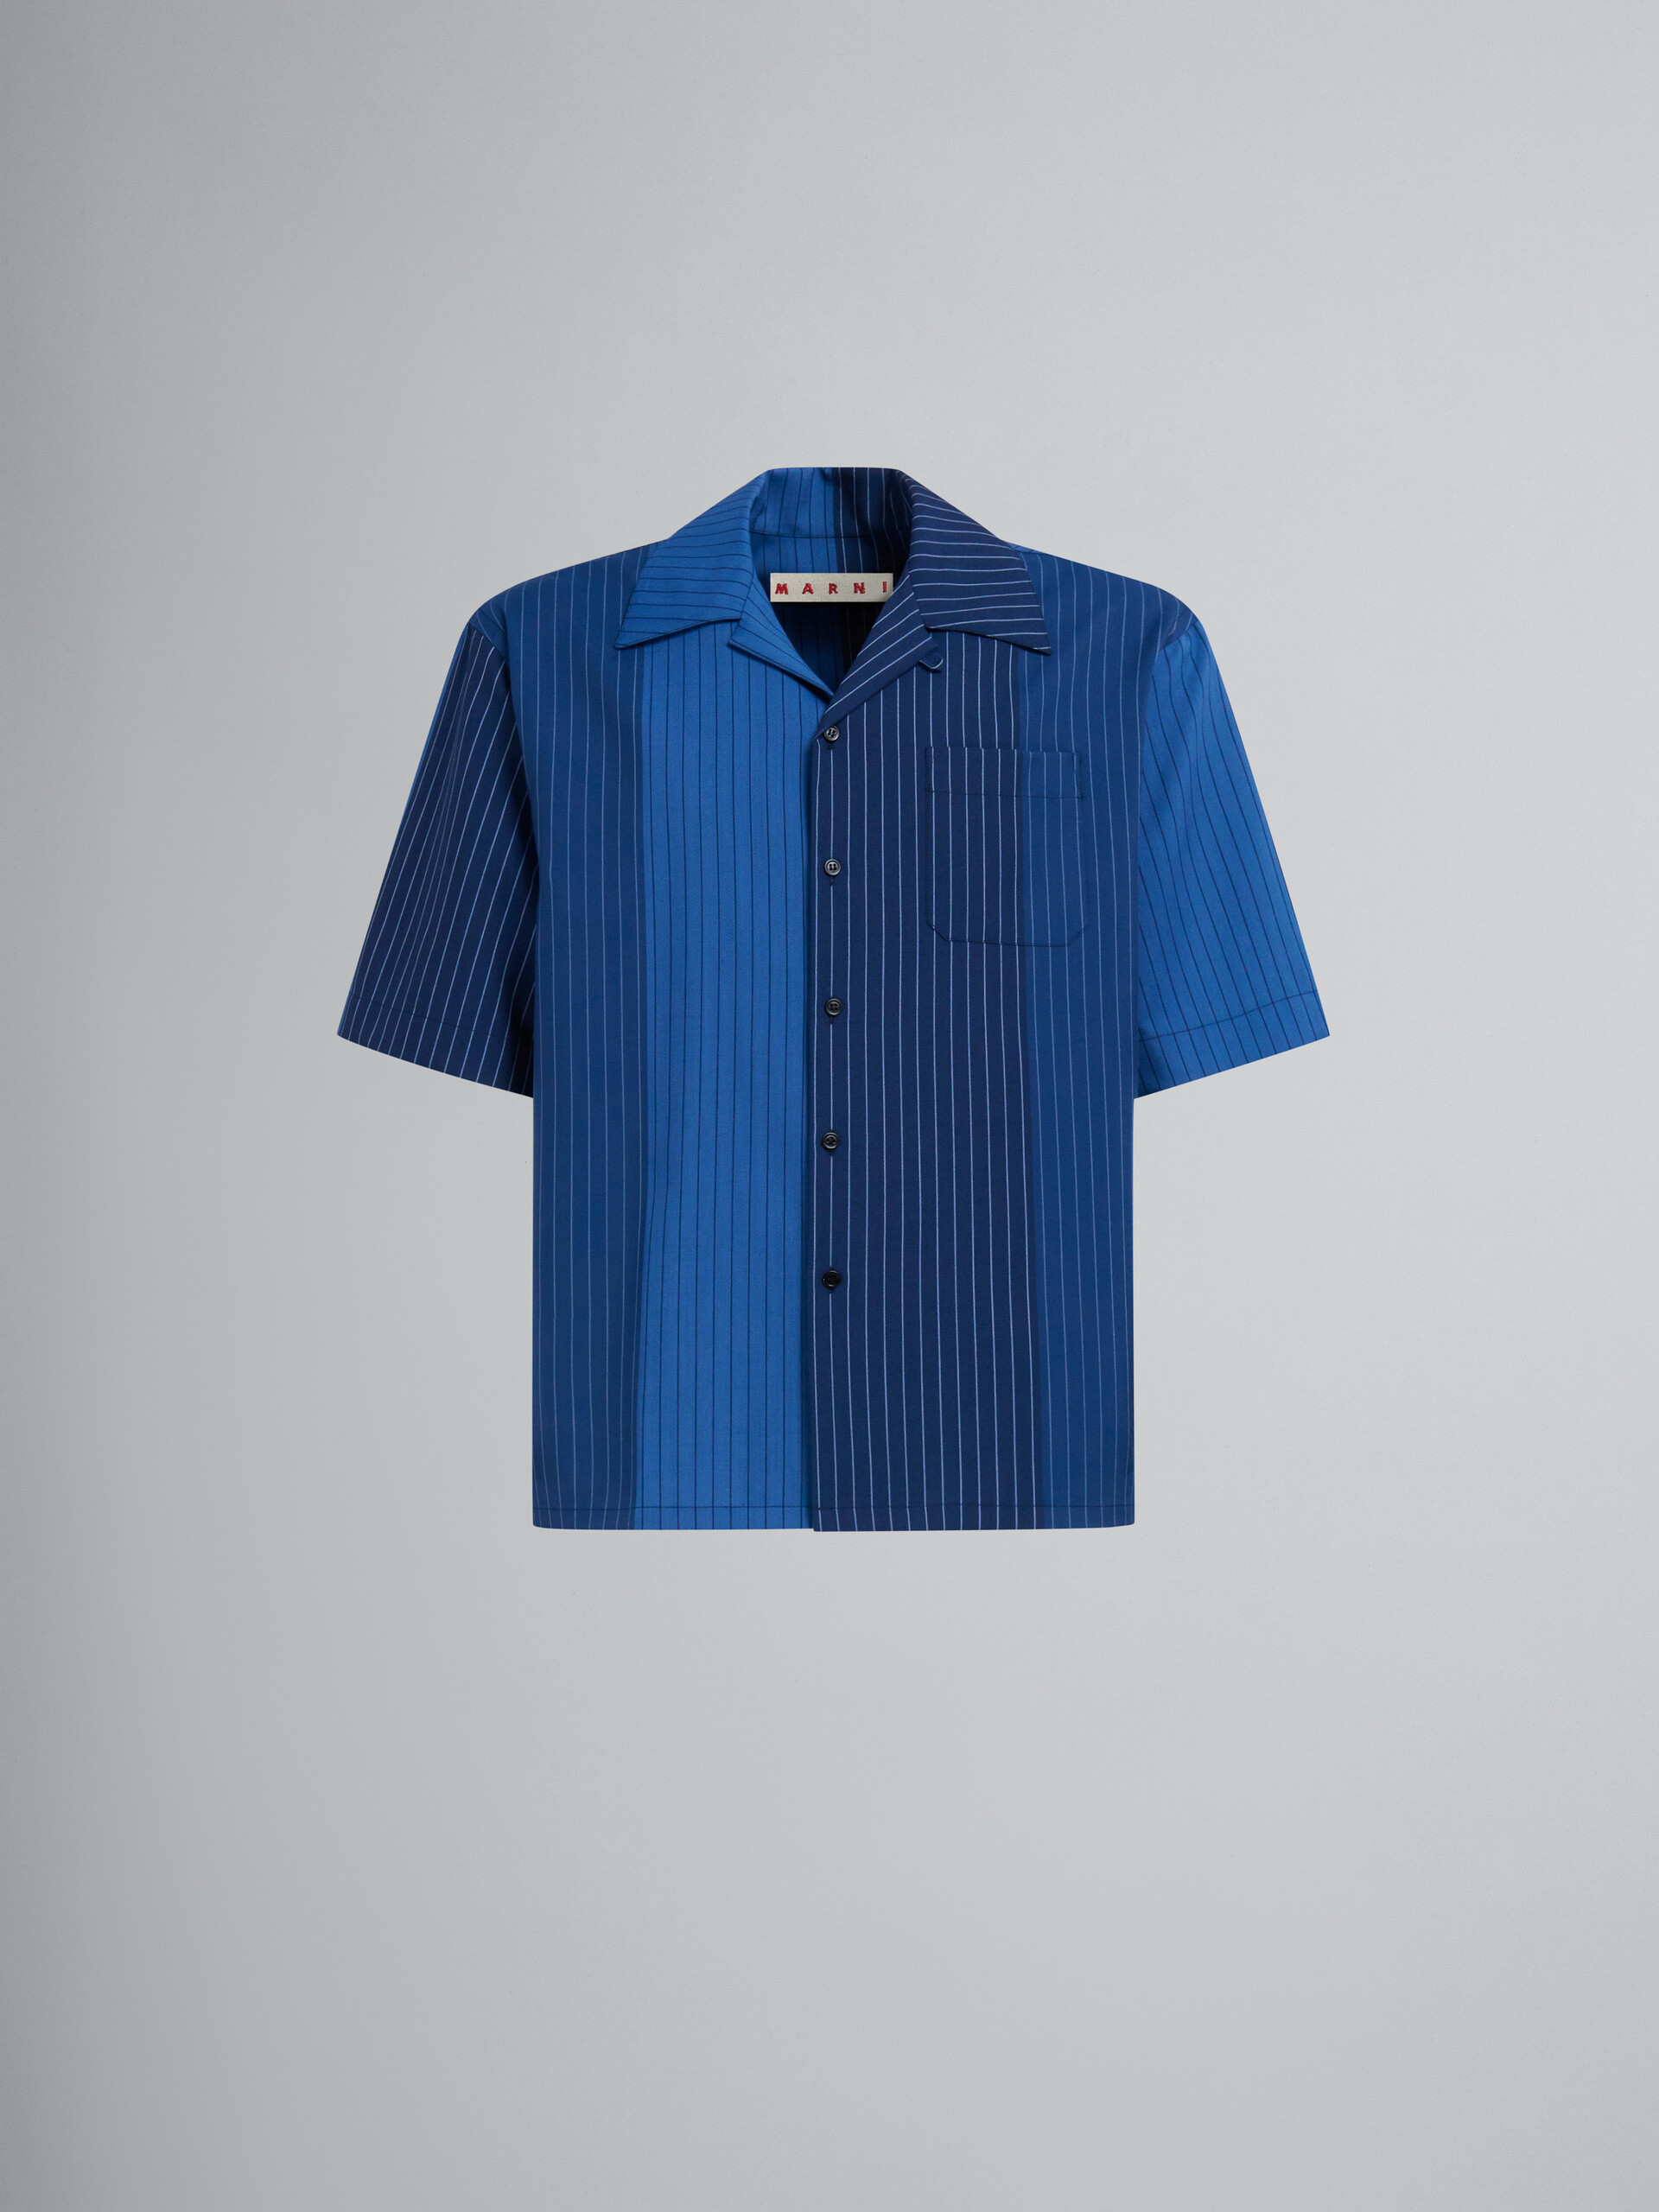 Blaues Bowlinghemd aus Wolle mit Nadelstreifen in Dégradé-Optik - Hemden - Image 1